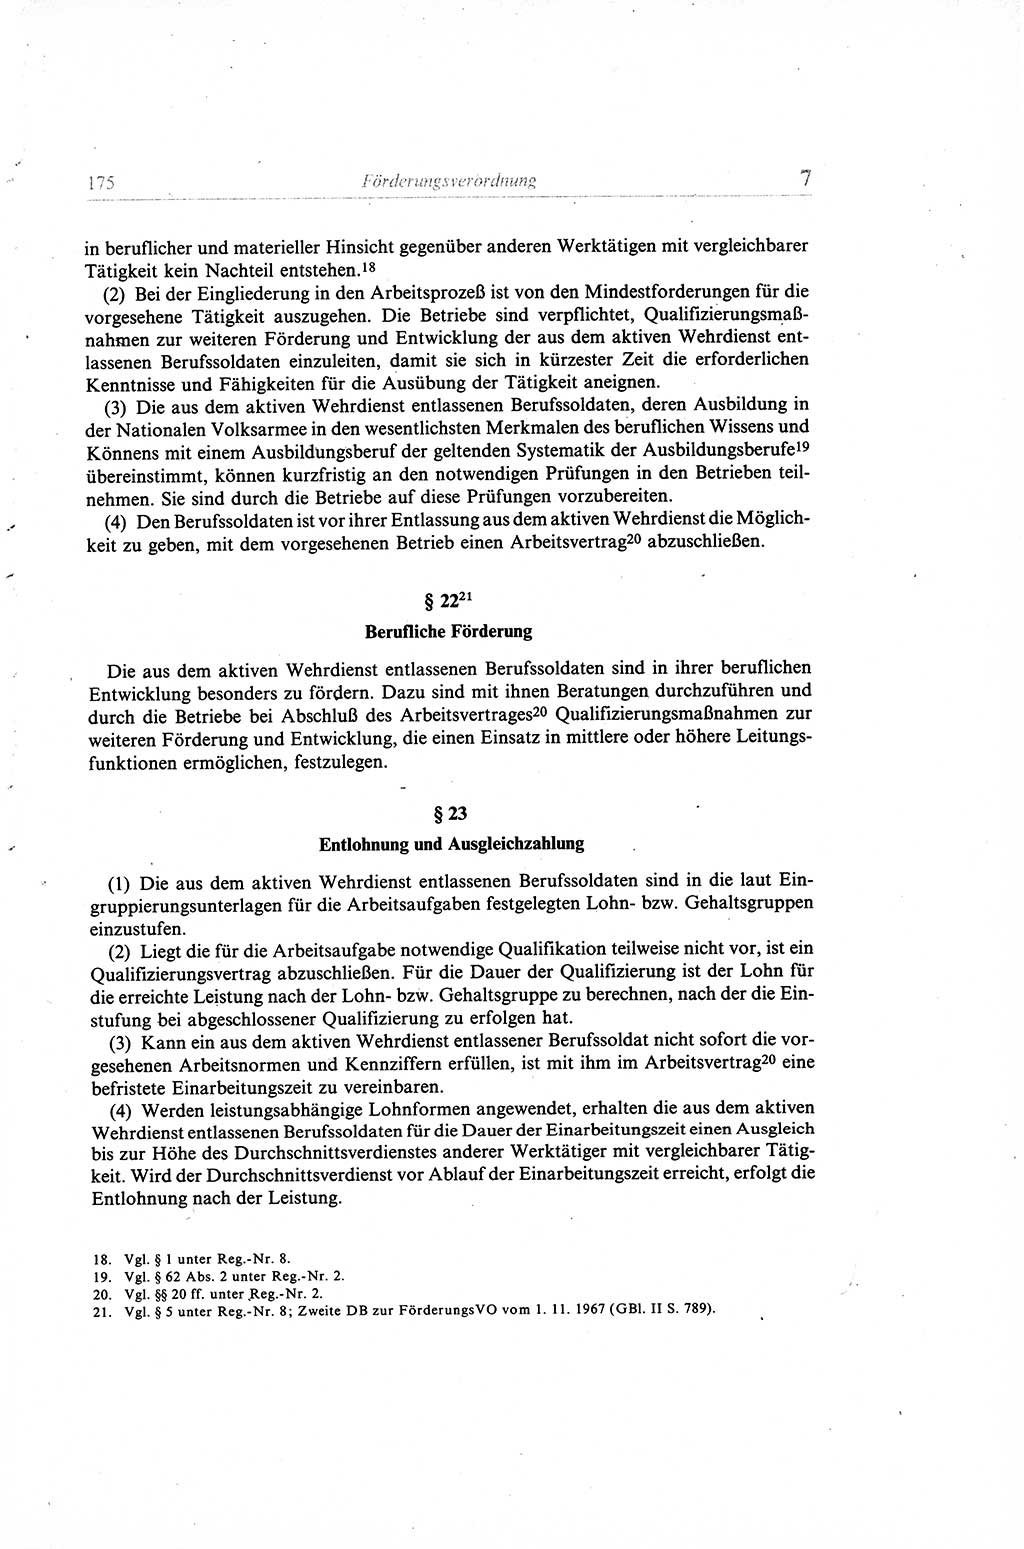 Gesetzbuch der Arbeit (GBA) und andere ausgewählte rechtliche Bestimmungen [Deutsche Demokratische Republik (DDR)] 1968, Seite 175 (GBA DDR 1968, S. 175)